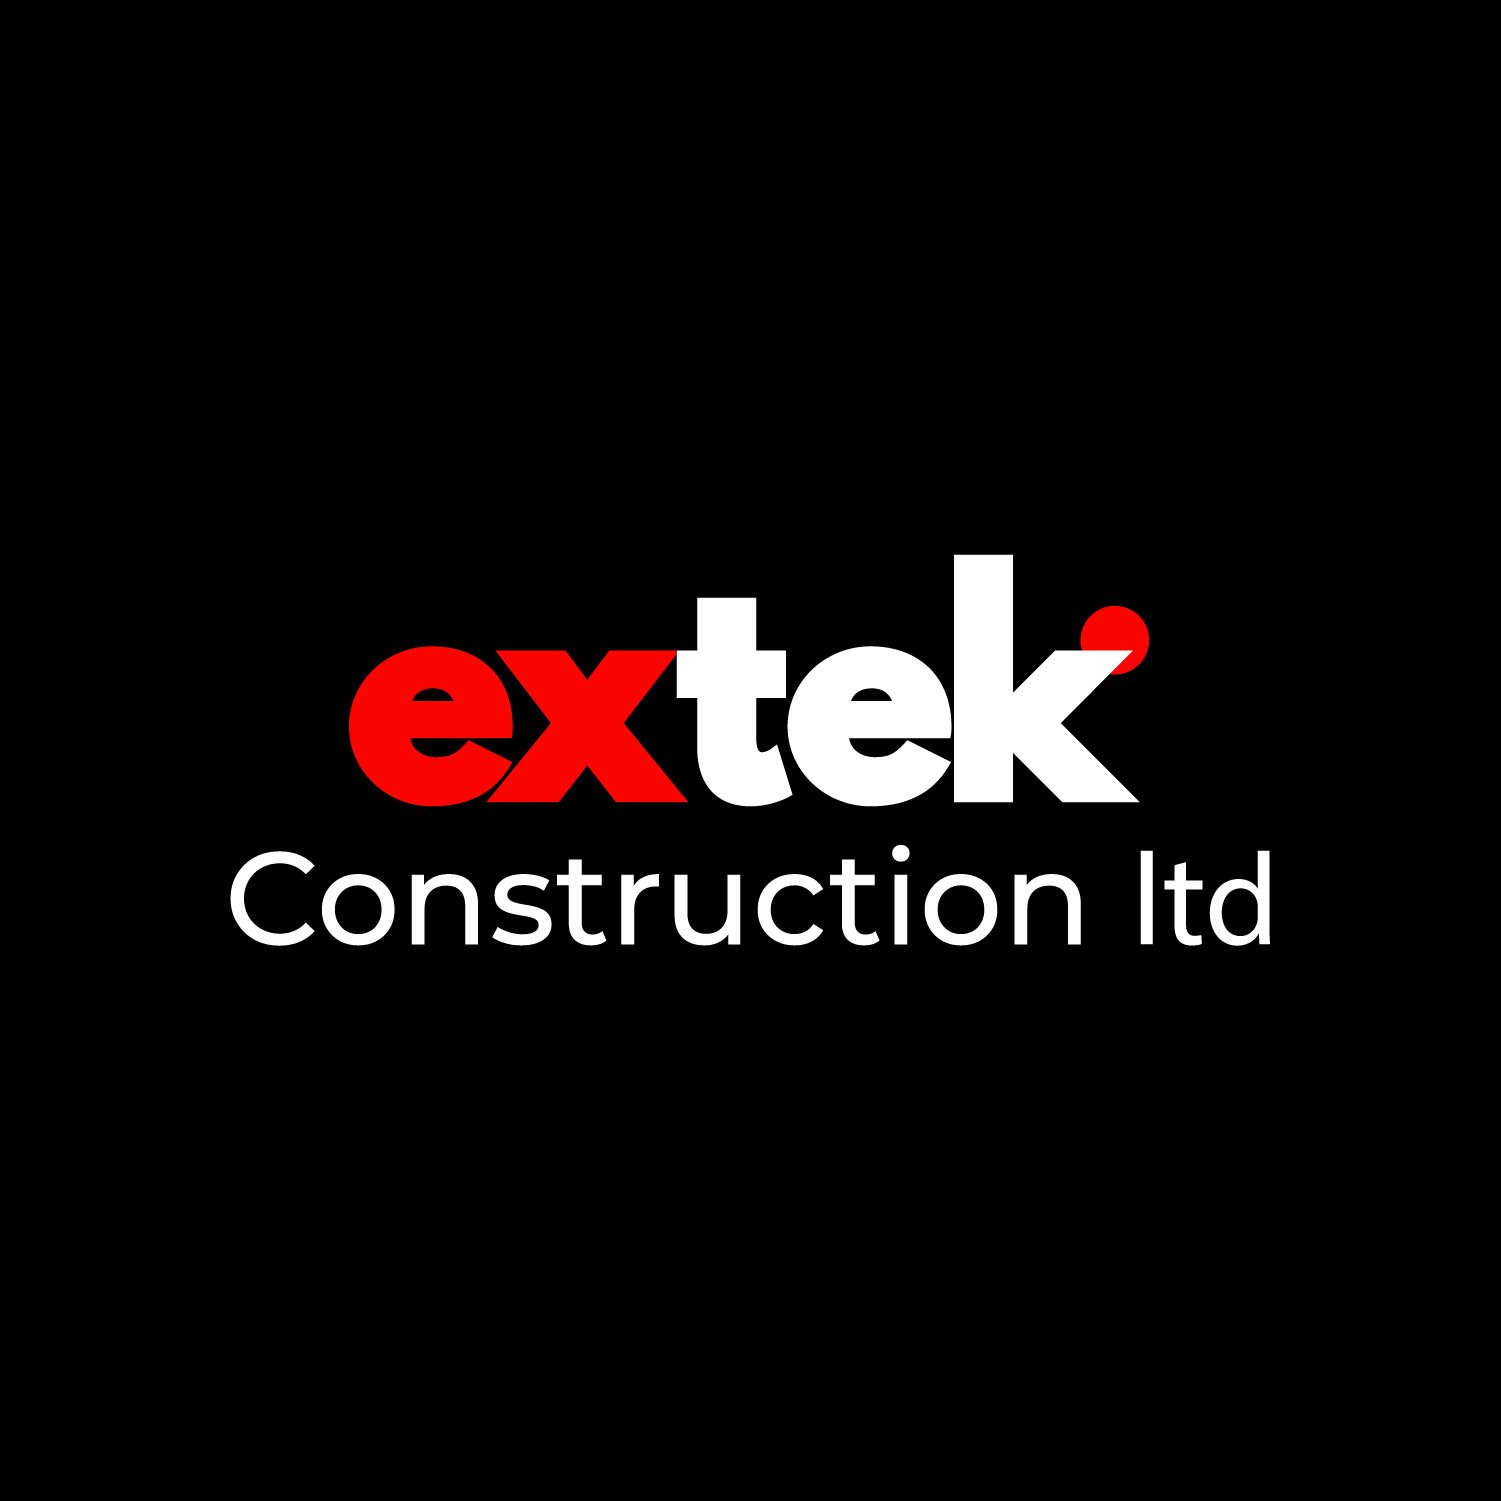 Extek Construction Ltd-02 white.jpg